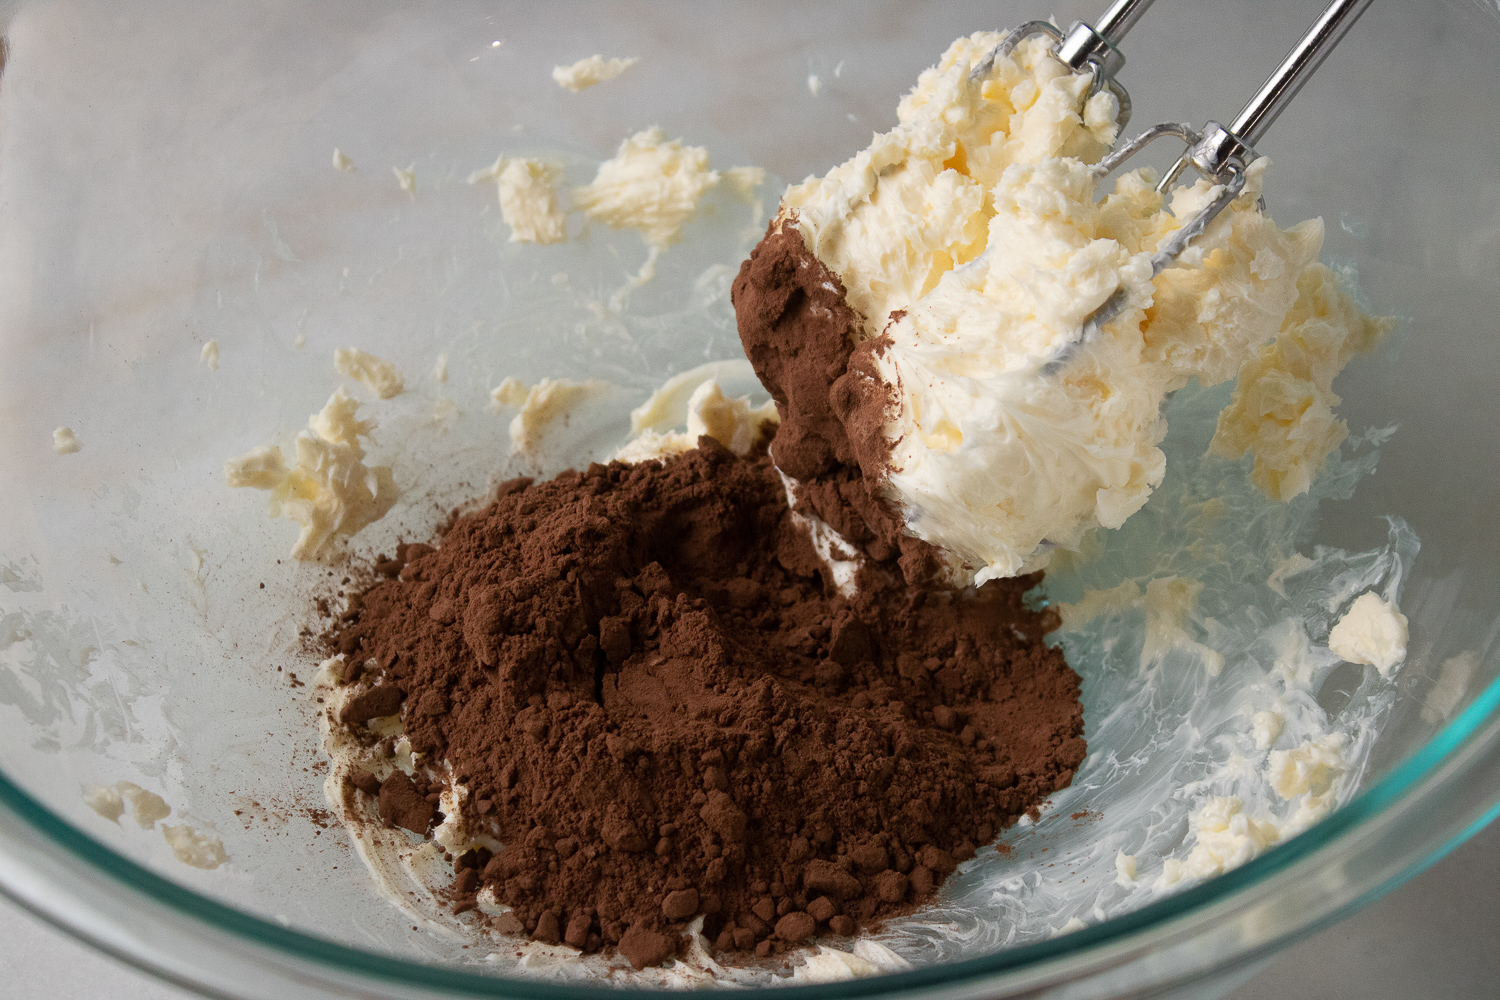 Adding in the cocoa.